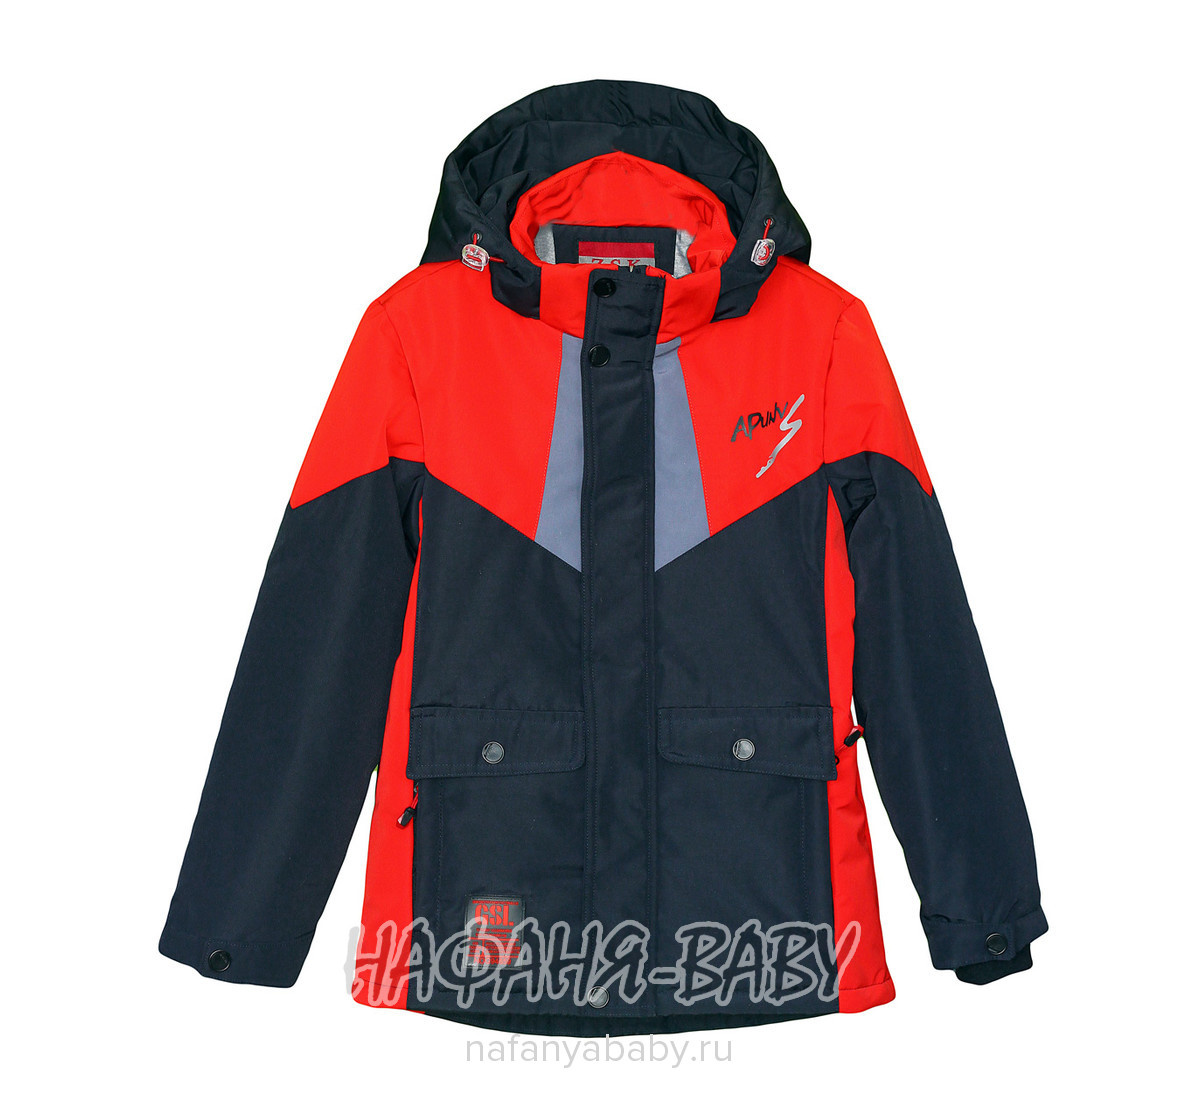 Детская демисезонная куртка ZCK арт: 2255, 10-15 лет, 5-9 лет, оптом Китай (Пекин)